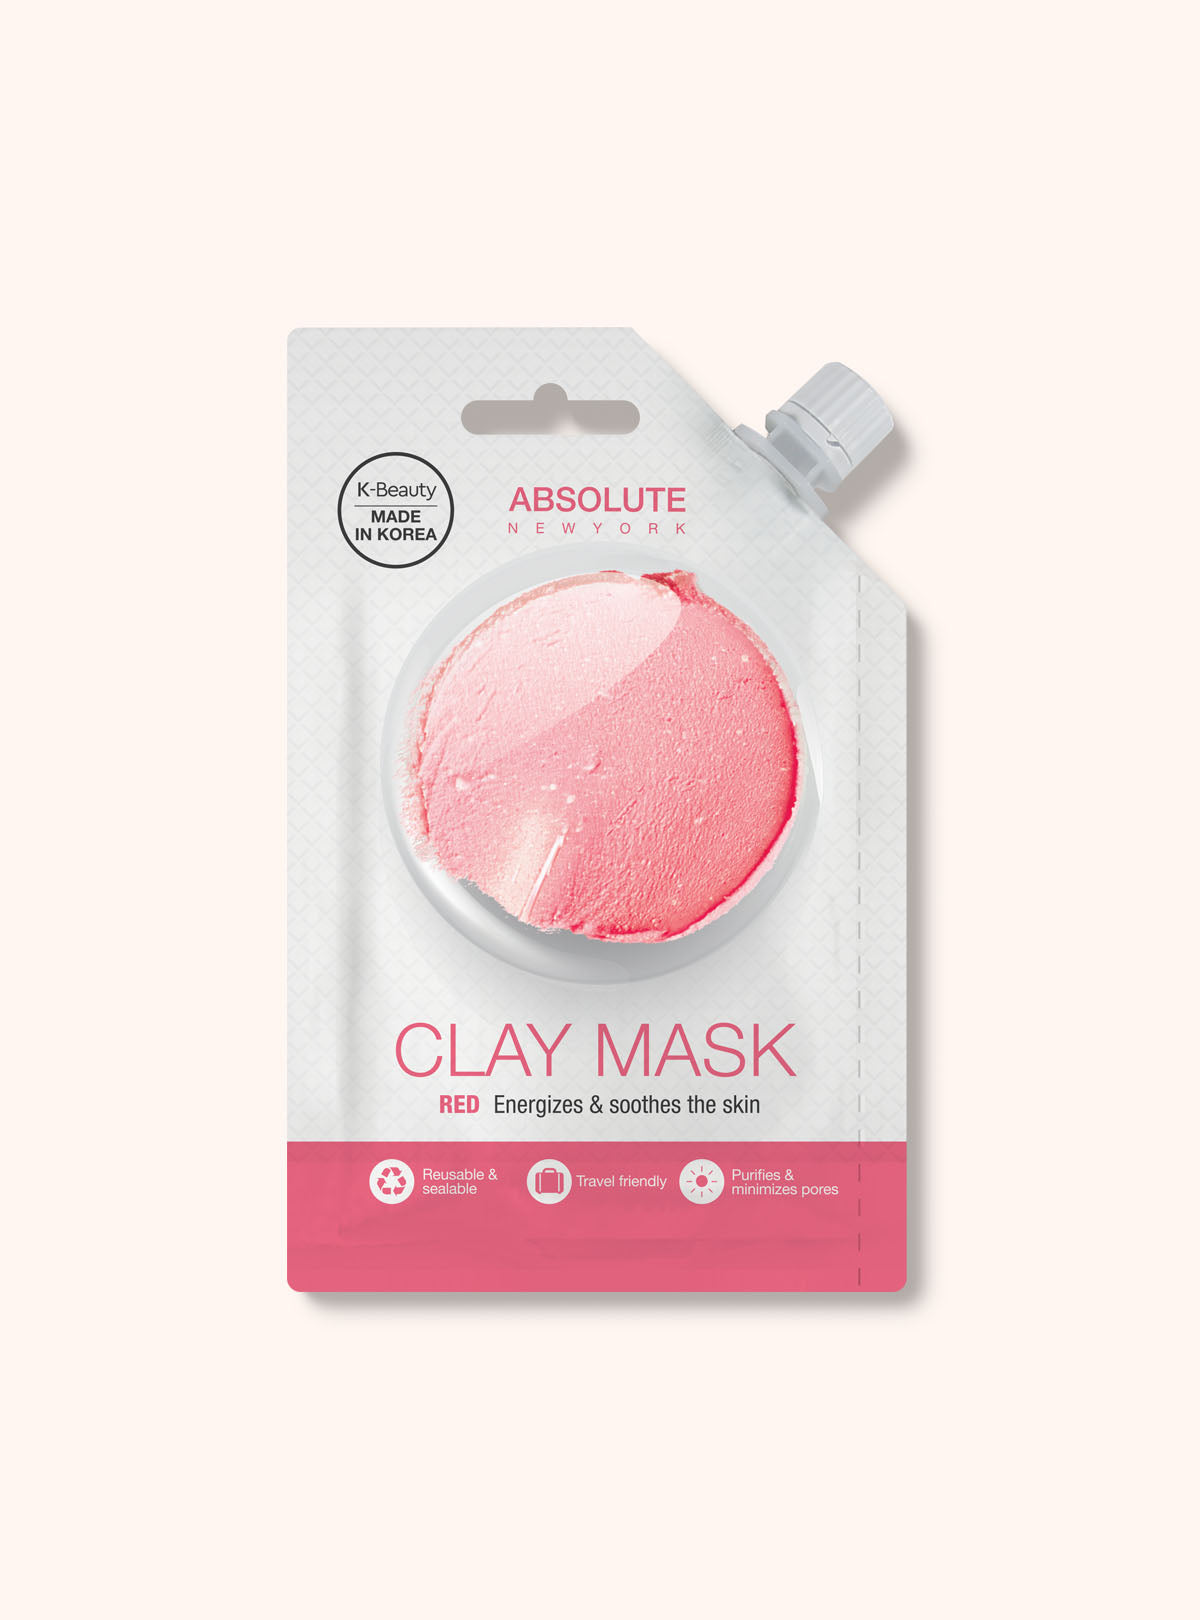 Unbranded Paper Mask Skin Masks for sale